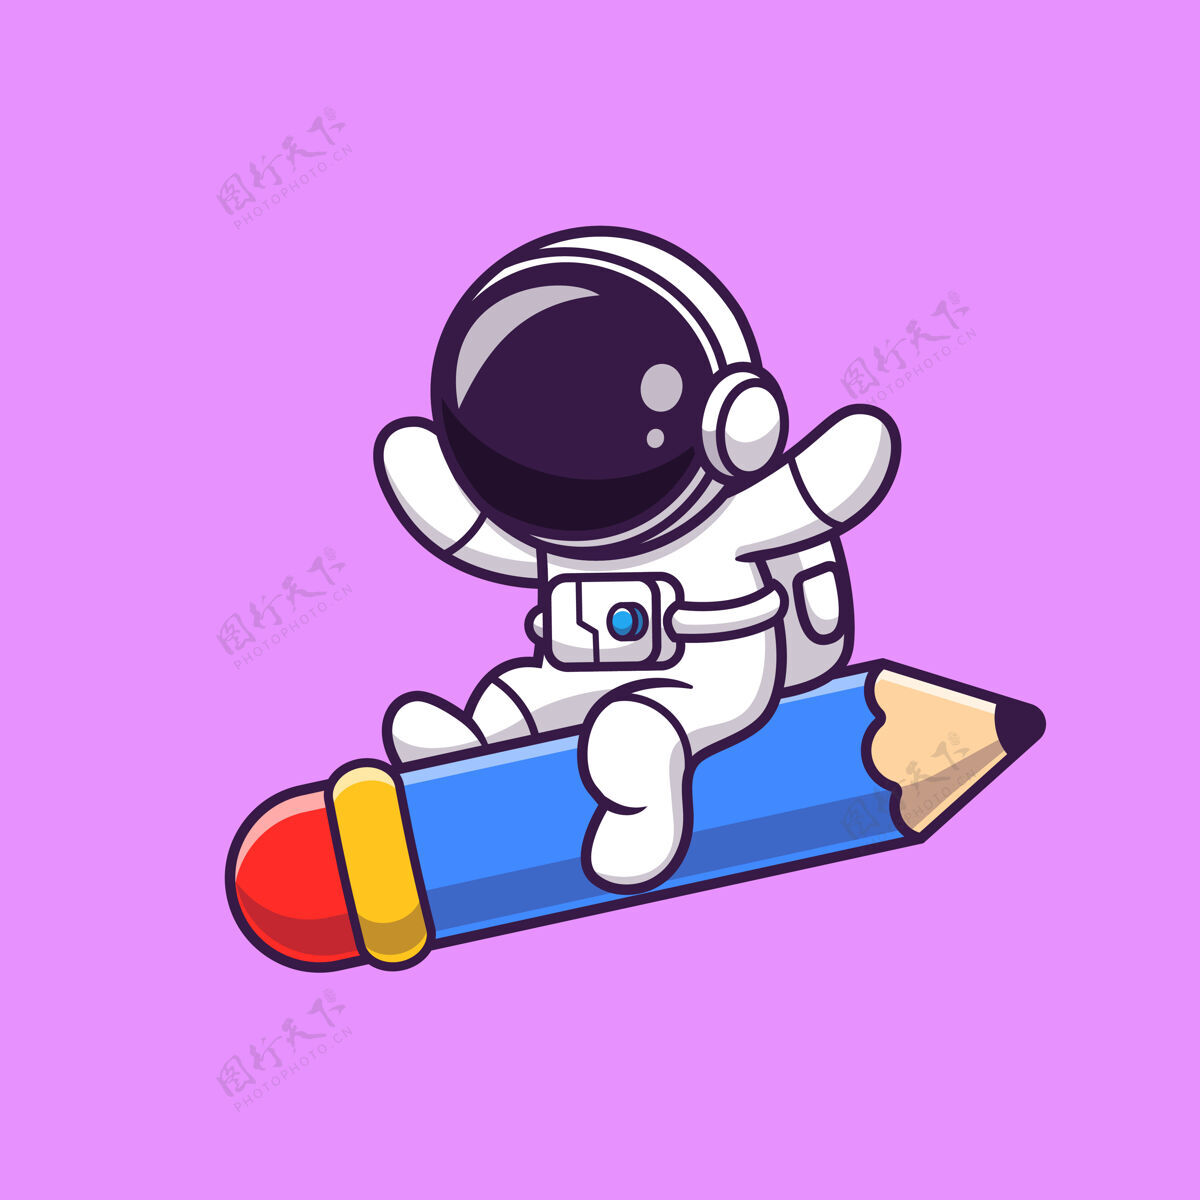 吉祥物可爱的宇航员与铅笔火箭卡通飞行学生银河宇宙飞船